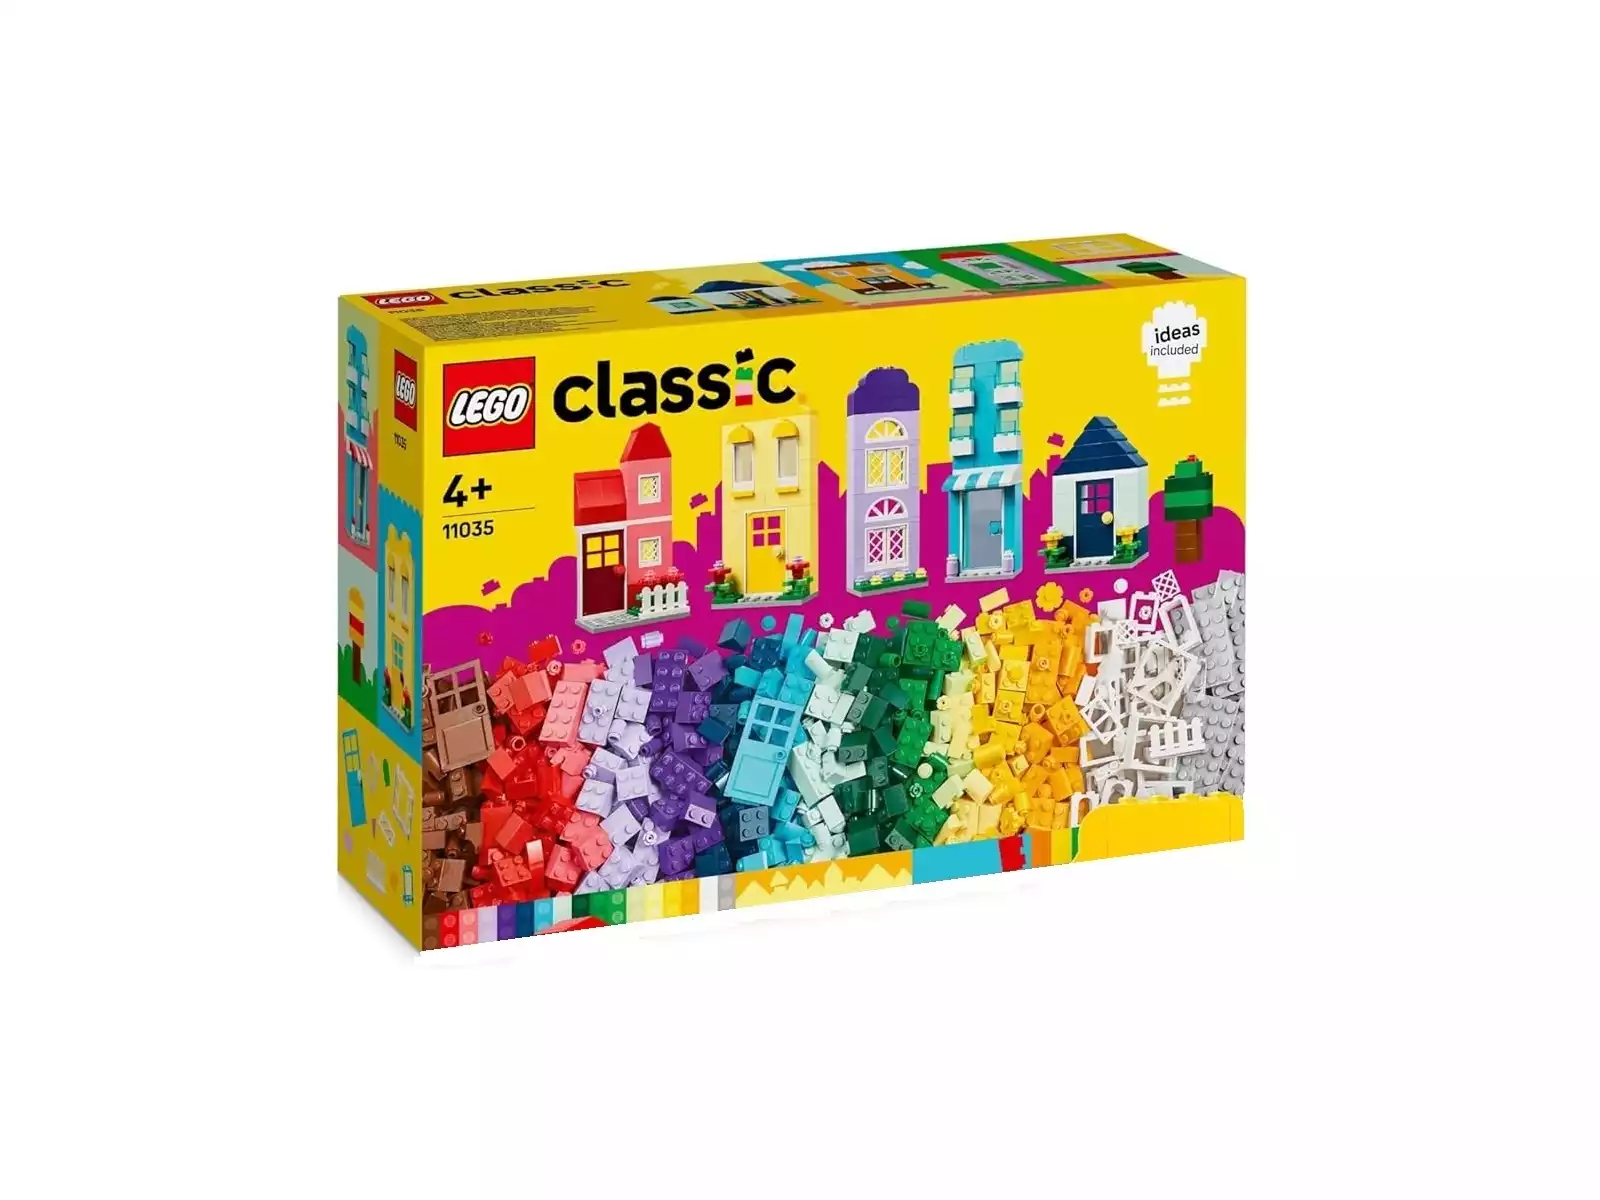 LEGO CLASSIC CAJA CREATIVA ROJA - Jugastur